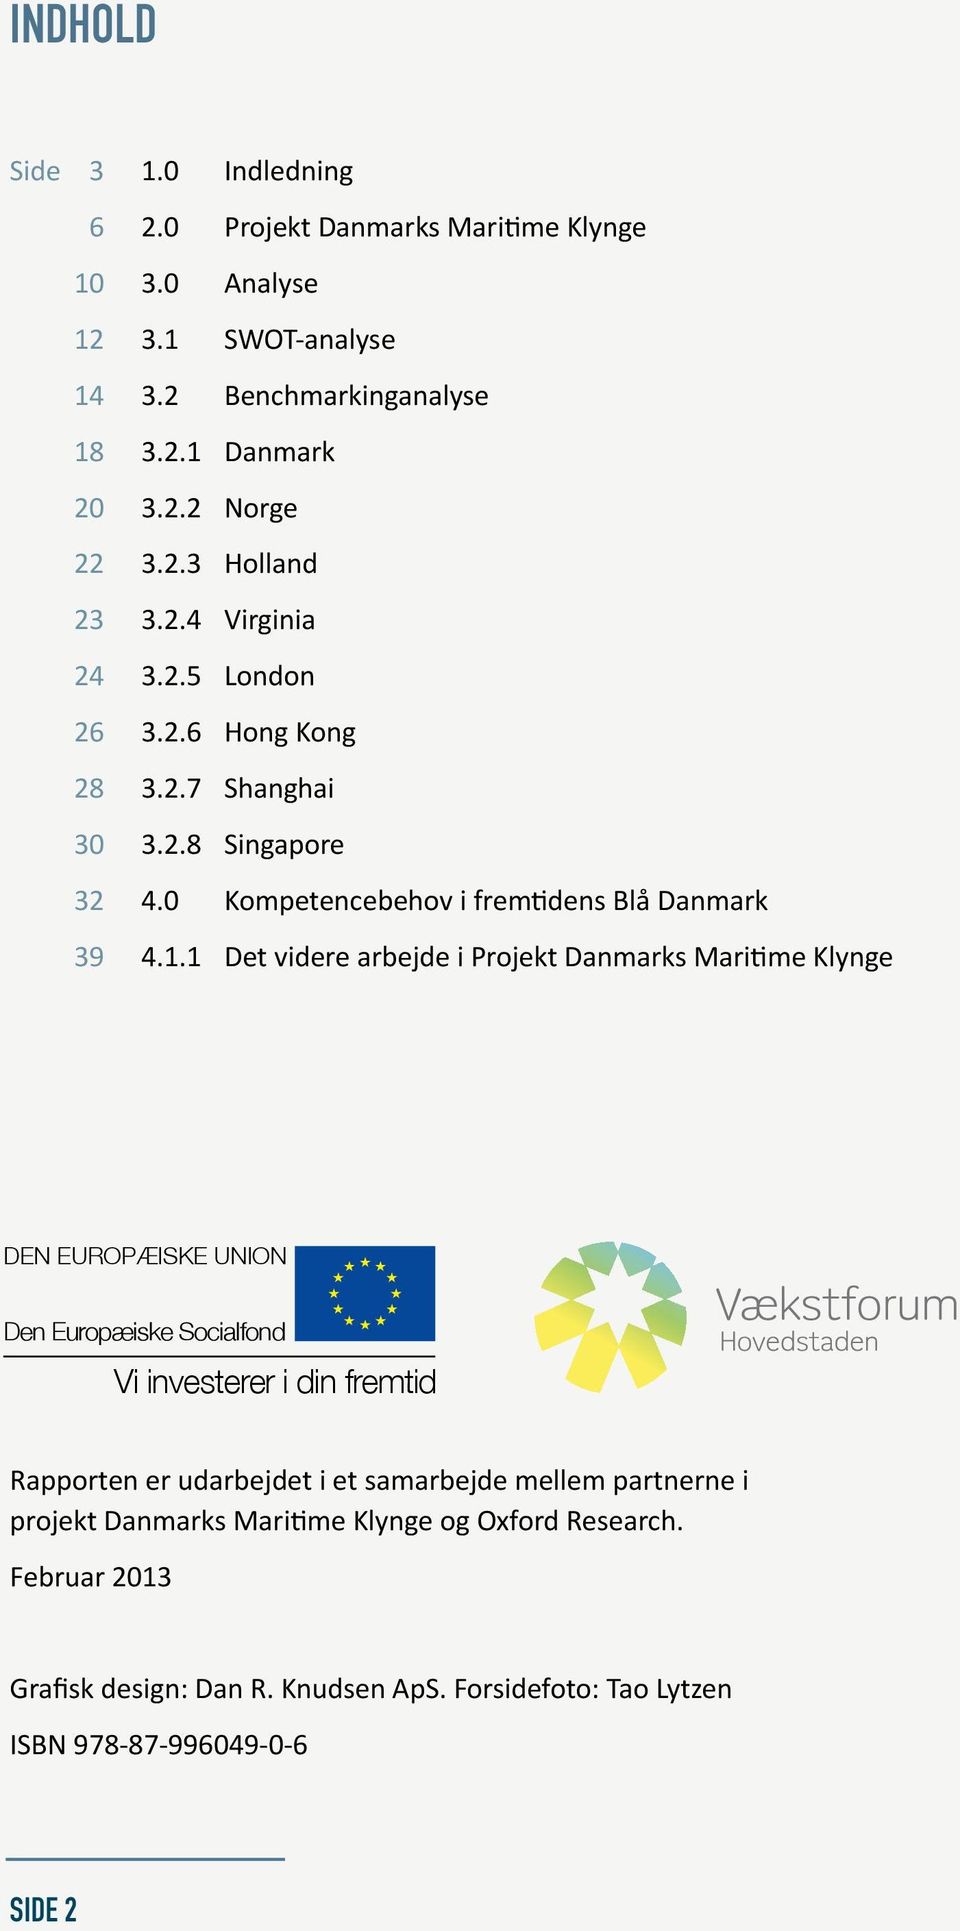 1 Det videre arbejde i Projekt Danmarks Maritime Klynge DEN EUROPÆISKE UNION Den Europæiske Socialfond Vi investerer i din fremtid Rapporten er udarbejdet i et